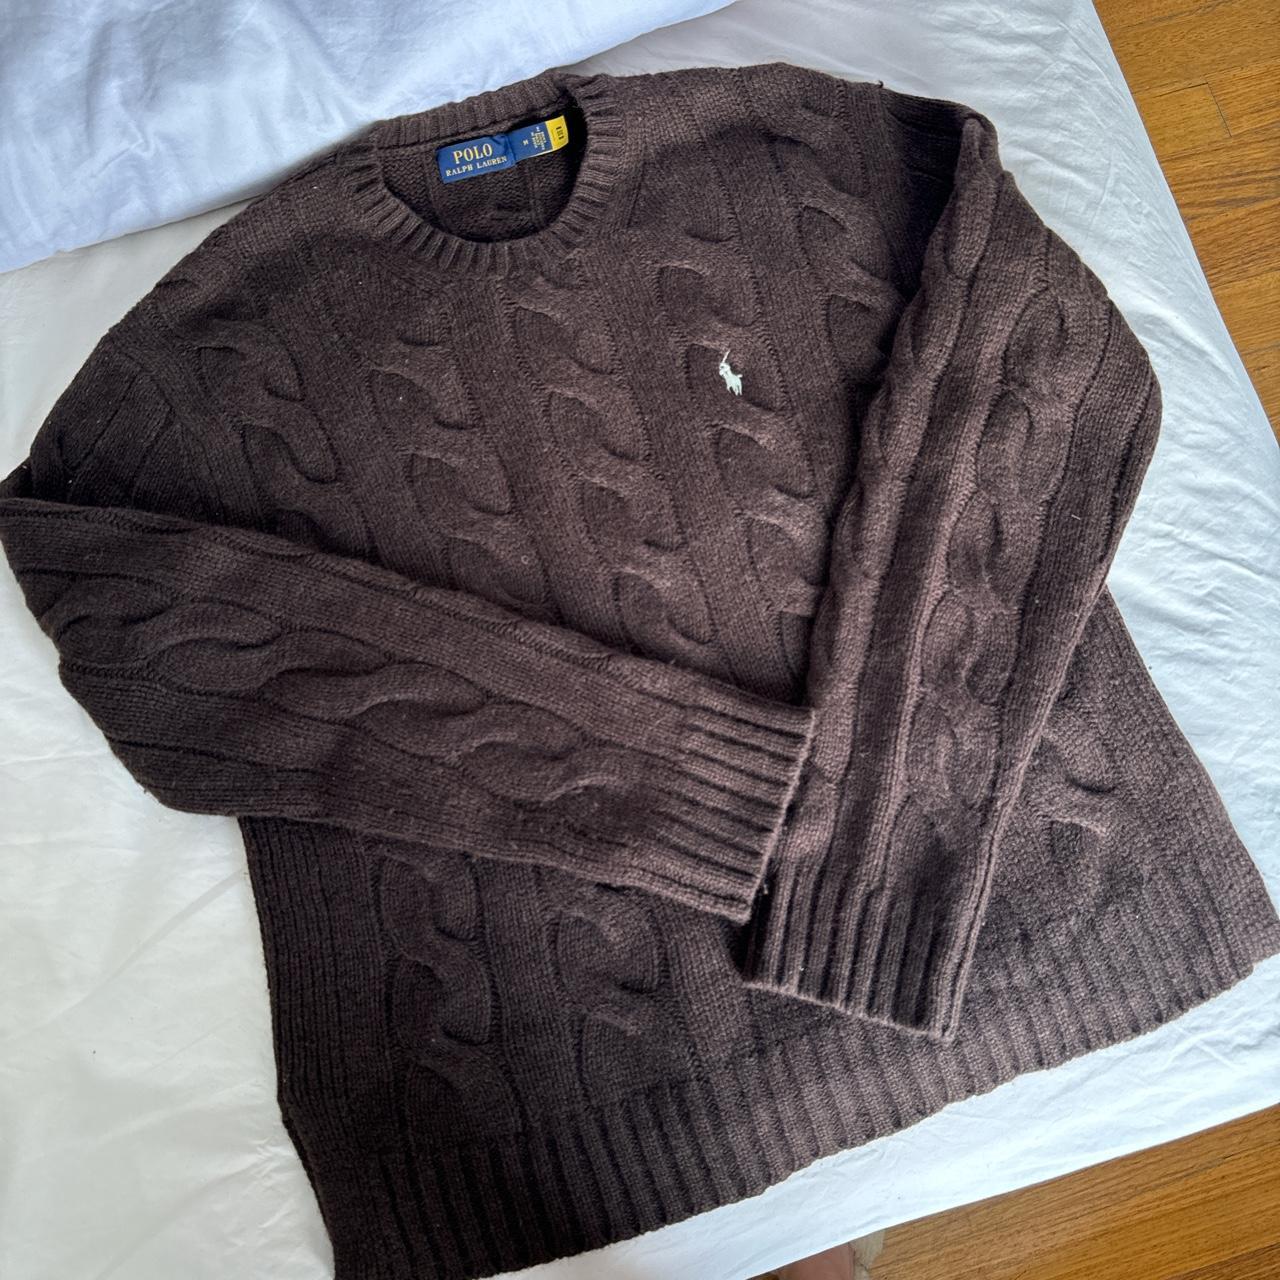 POLO RALPH LAUREN knit jumper Size M (fits size... - Depop